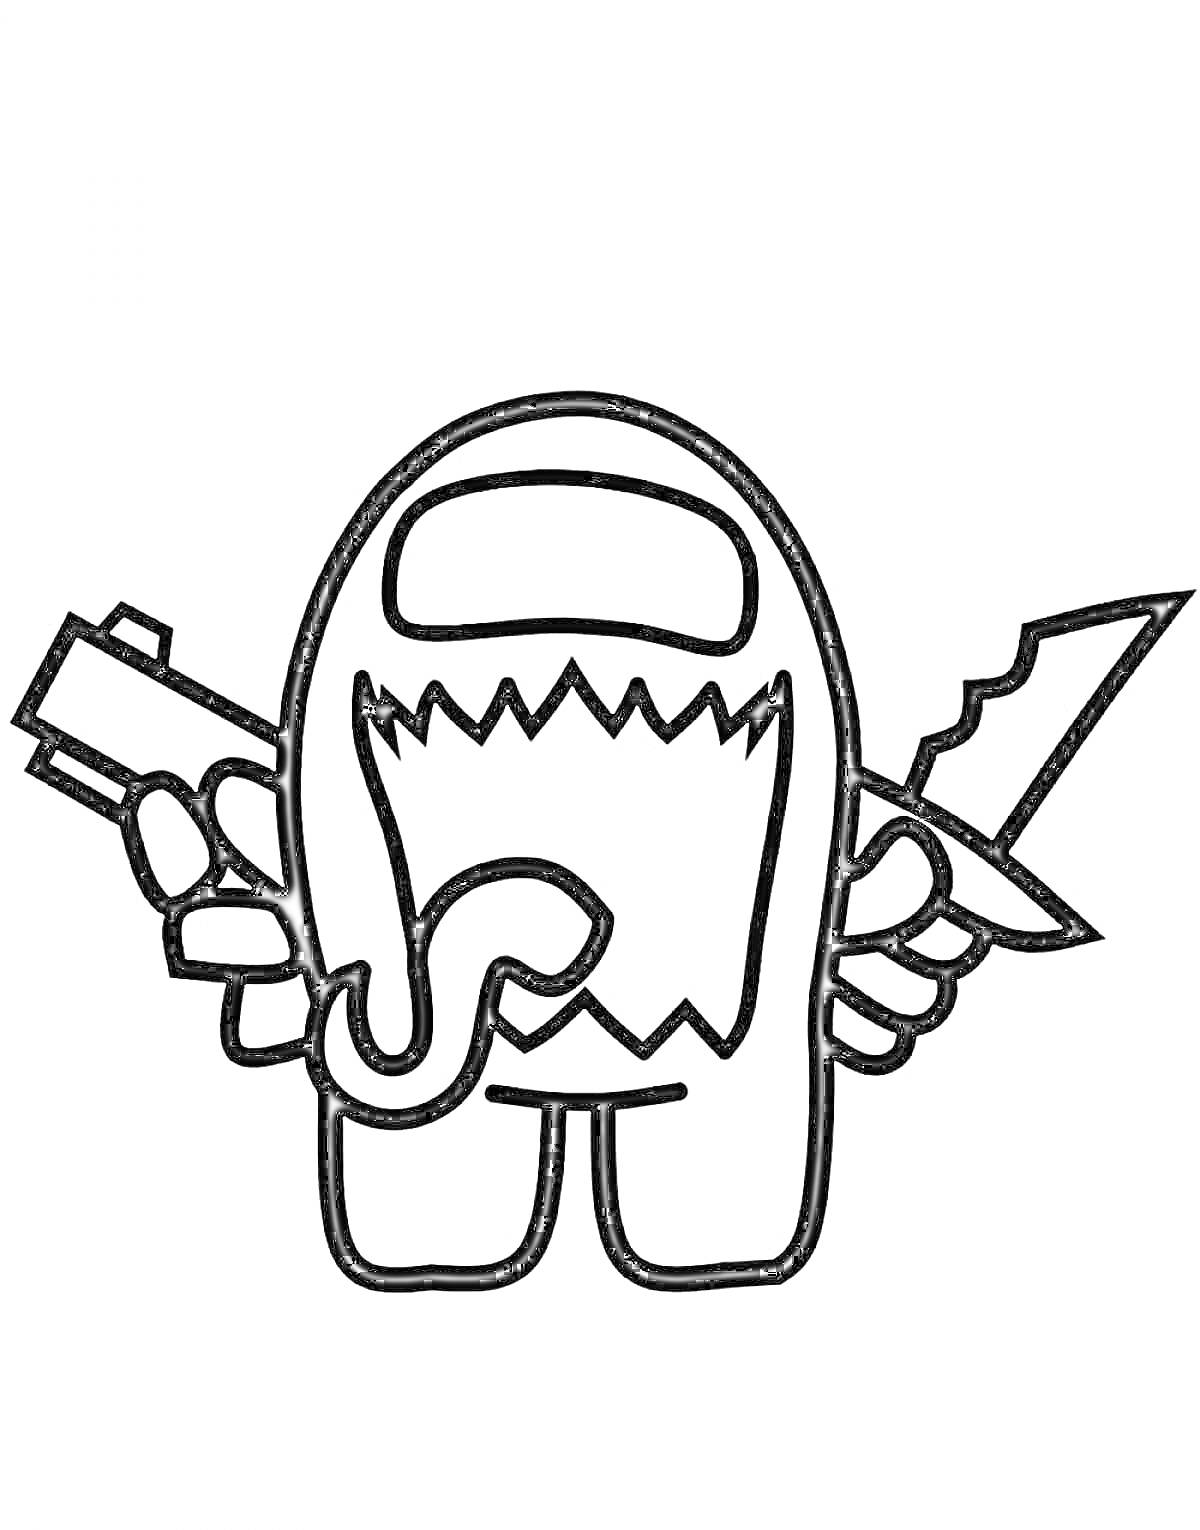 Раскраска Персонаж из игры Among Us с открытым ртом, исказанным зубами, вываливающимся языком, держащий нож и пистолет